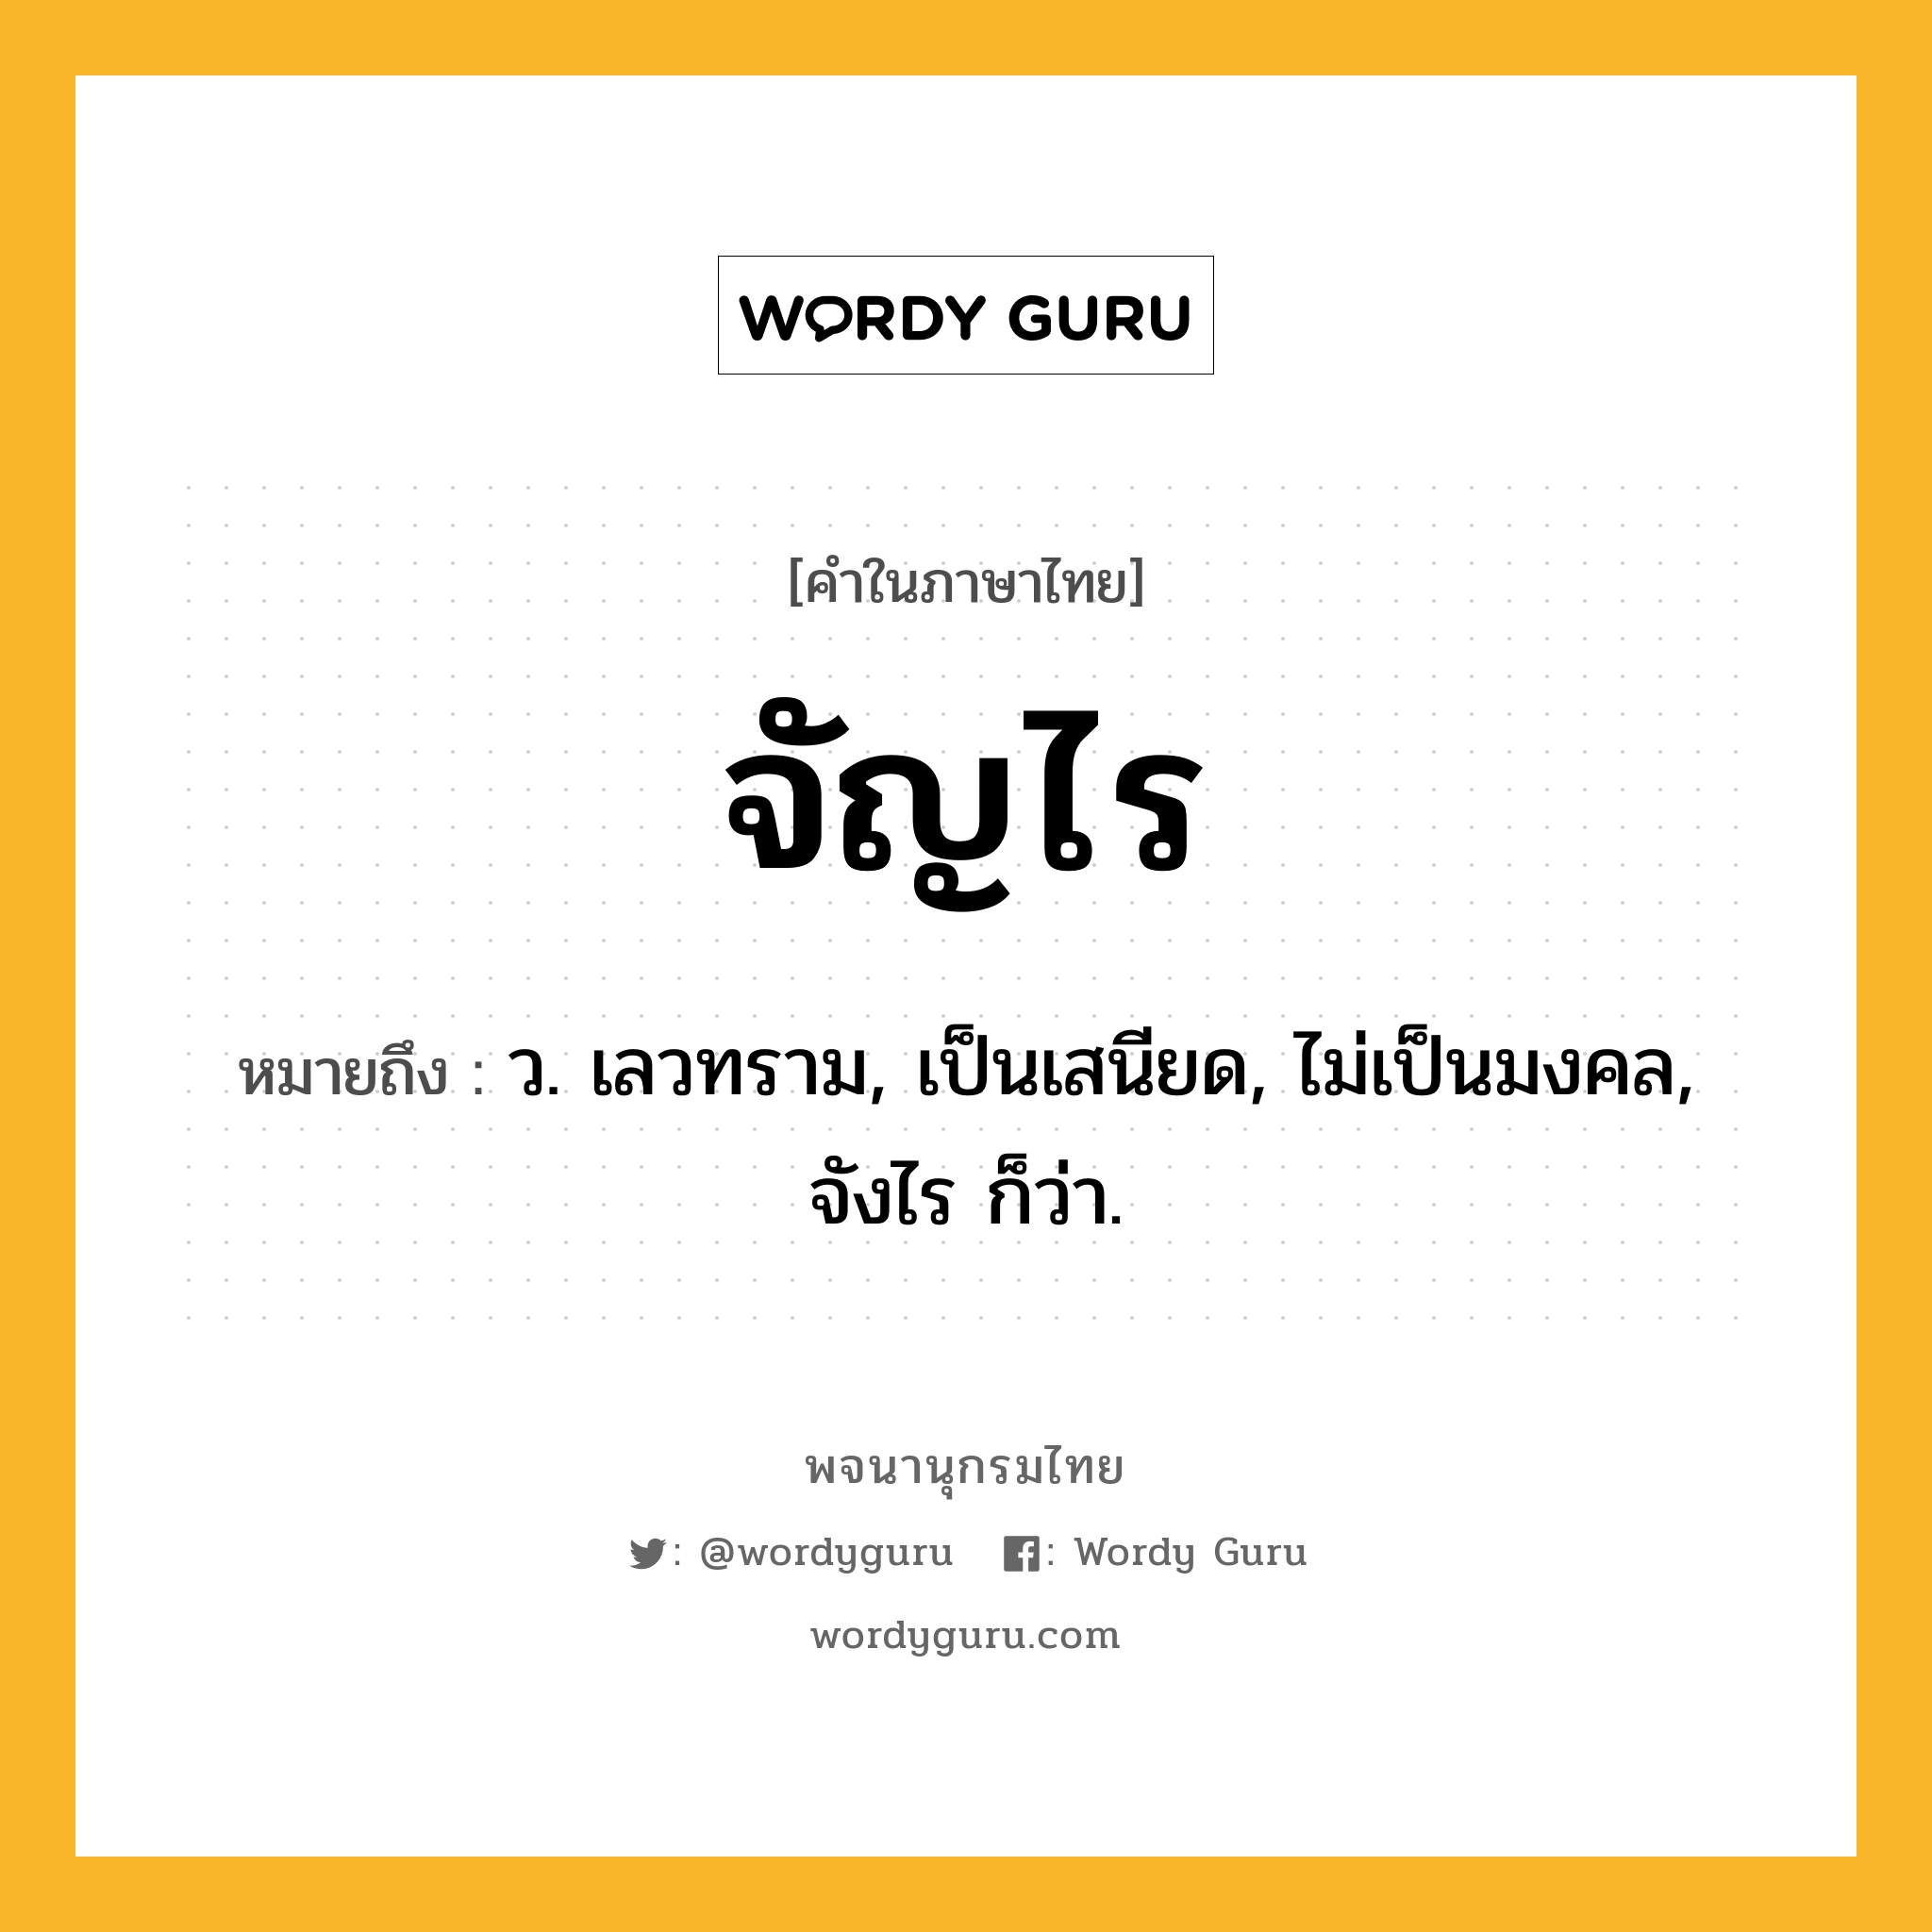 จัญไร ความหมาย หมายถึงอะไร?, คำในภาษาไทย จัญไร หมายถึง ว. เลวทราม, เป็นเสนียด, ไม่เป็นมงคล, จังไร ก็ว่า.